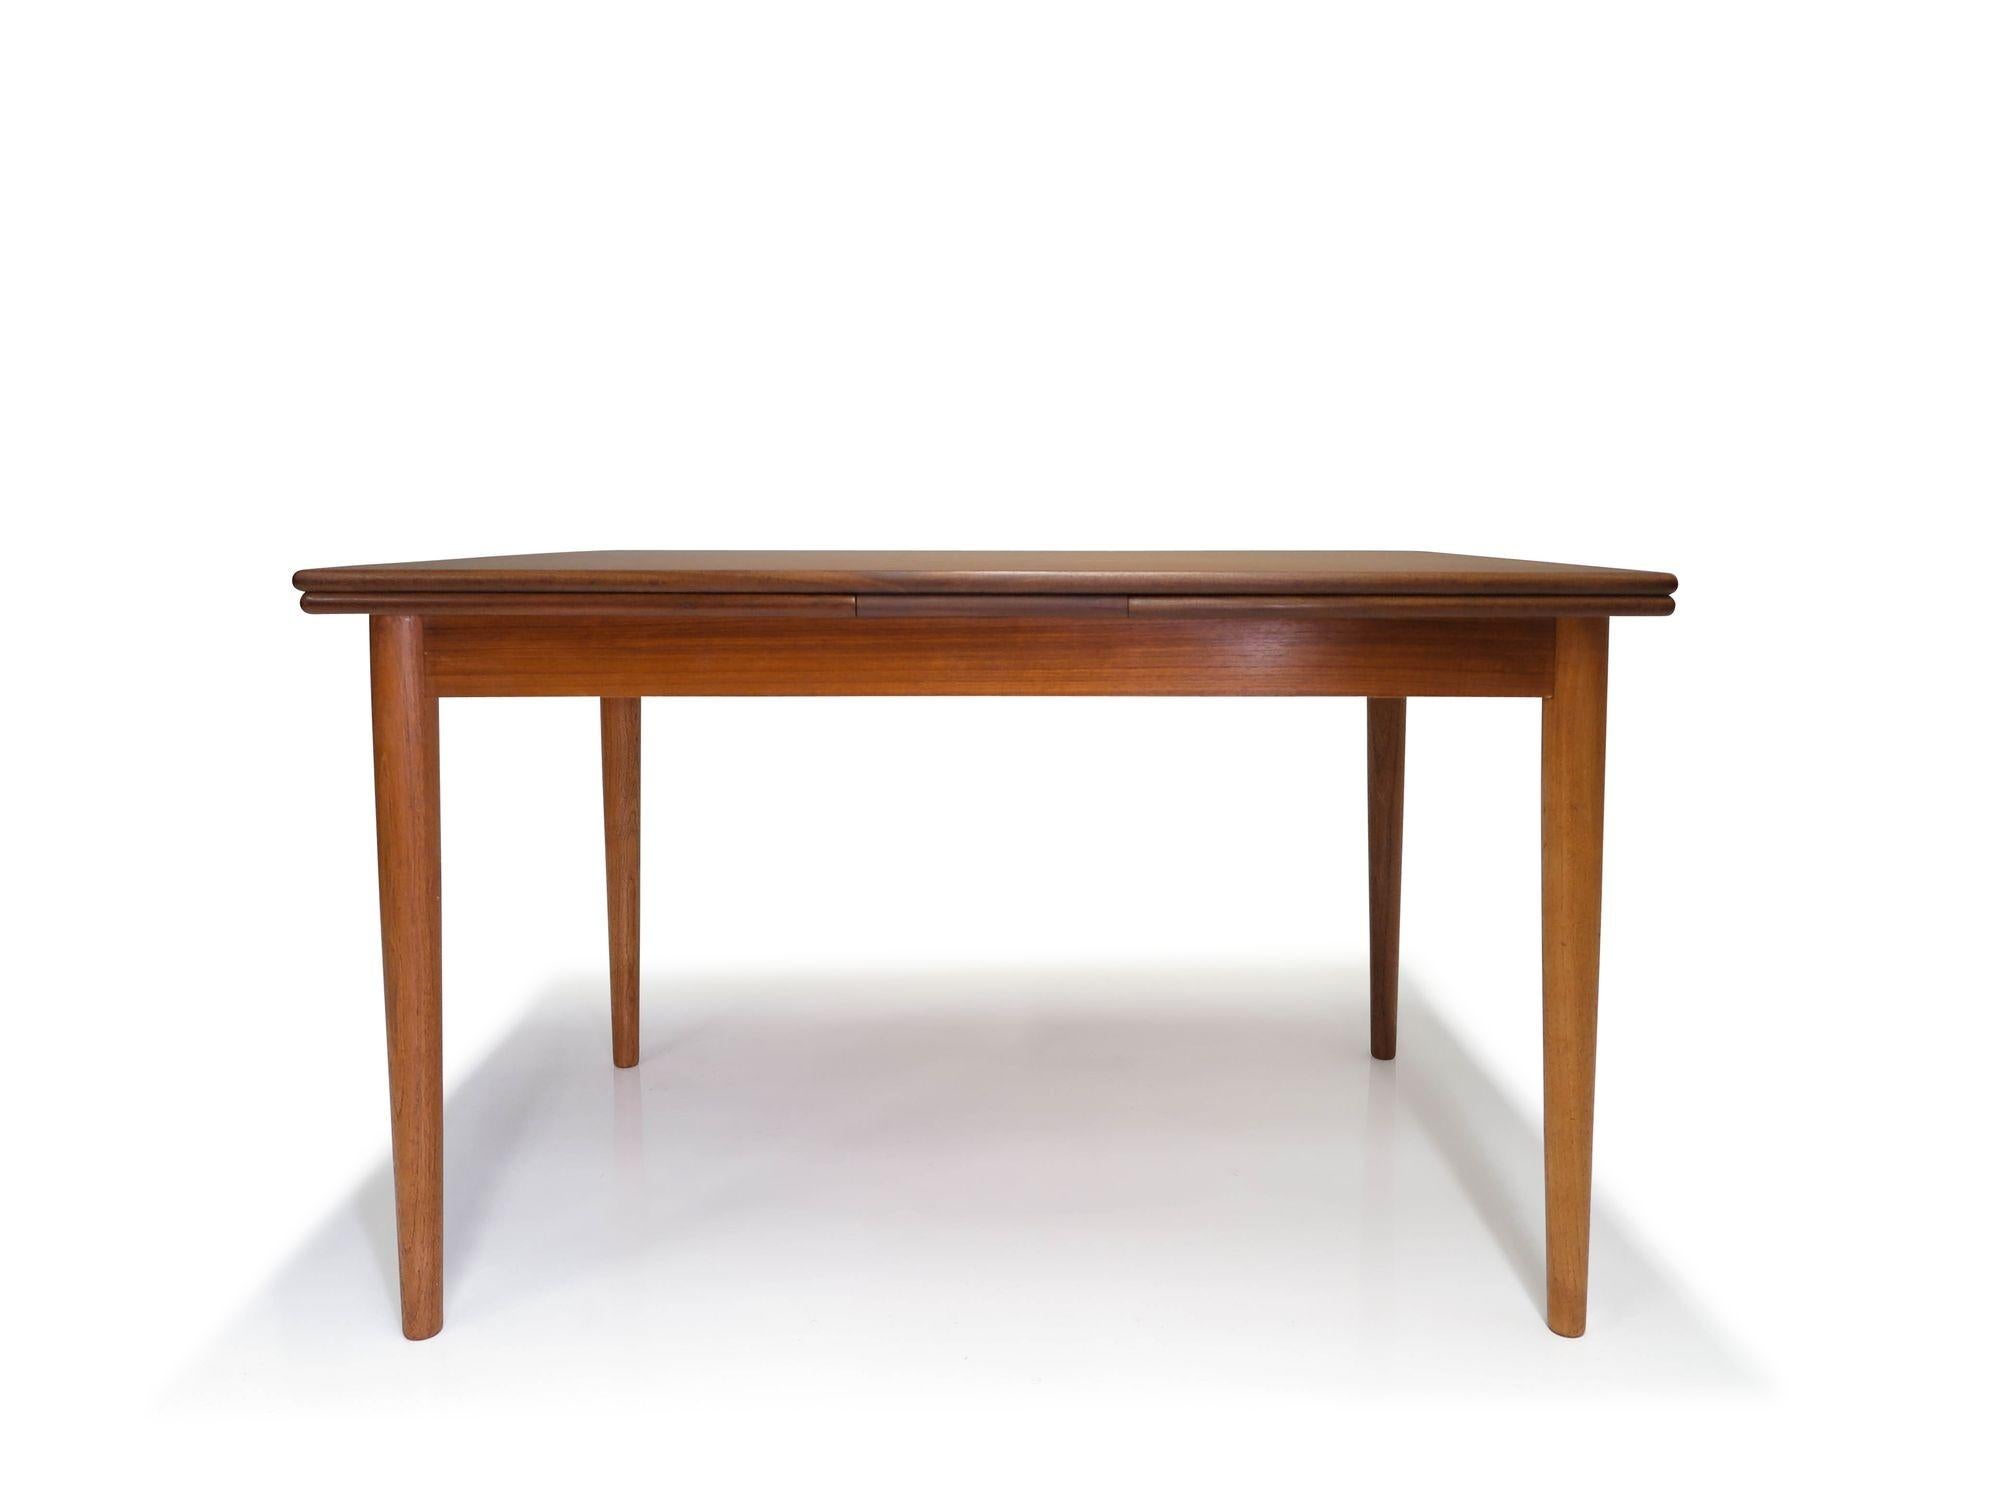 Table de salle à manger danoise en teck finement travaillée, attribuée à Arne Vodder, 1958, Danemark. La table de salle à manger est fabriquée en teck avec des bordures en bois massif et deux tiroirs à chaque extrémité. La table repose sur des pieds